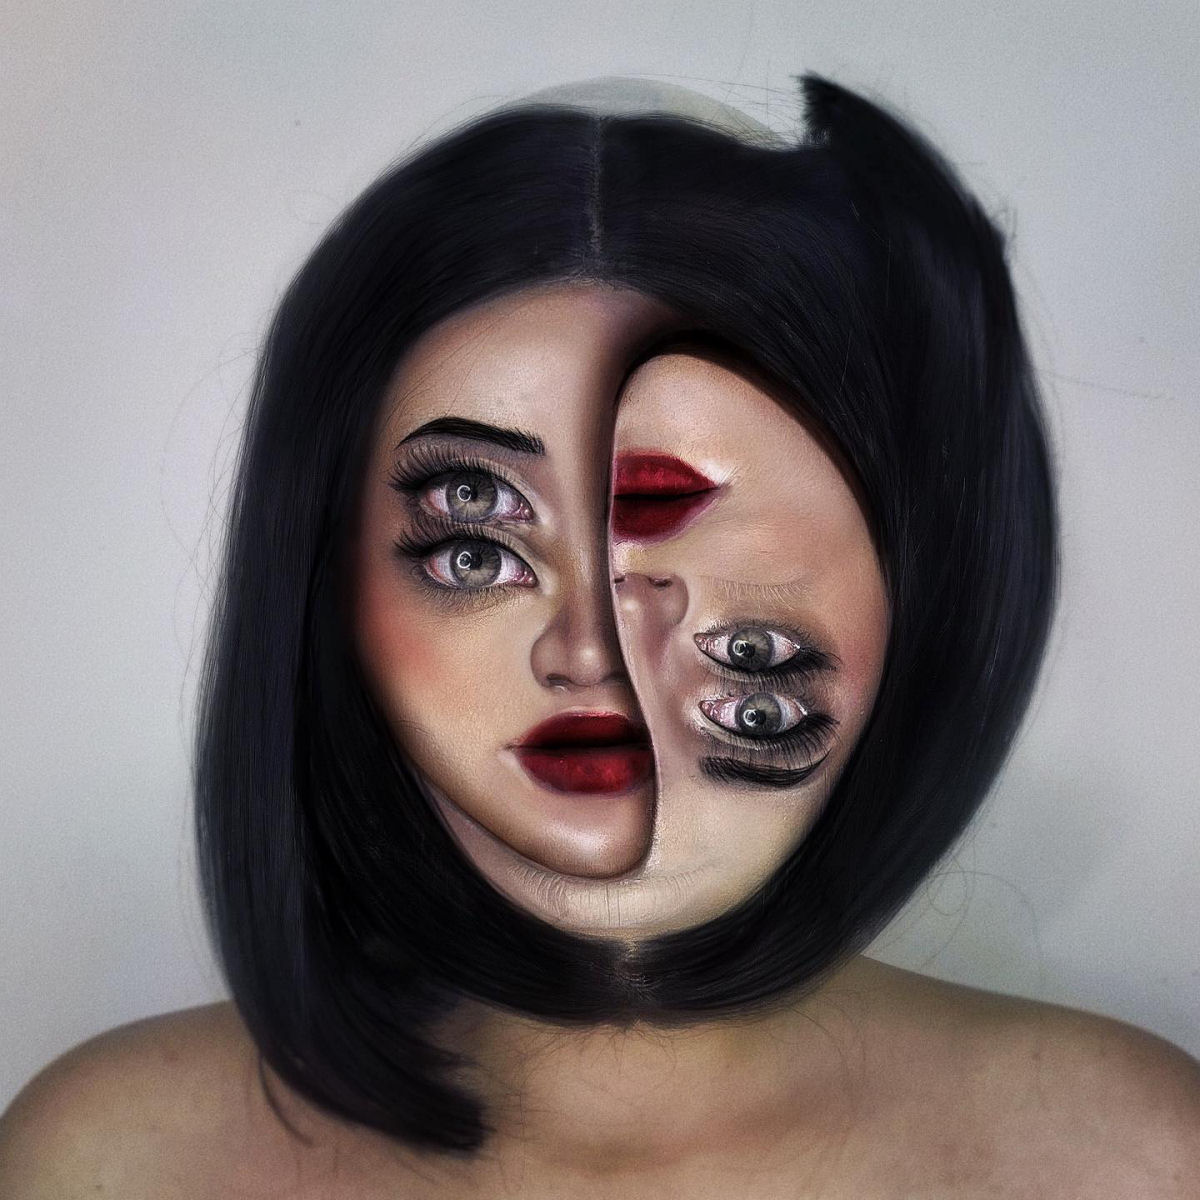 Artista usa seu próprio rosto como tela para ilusões surrealistas 11